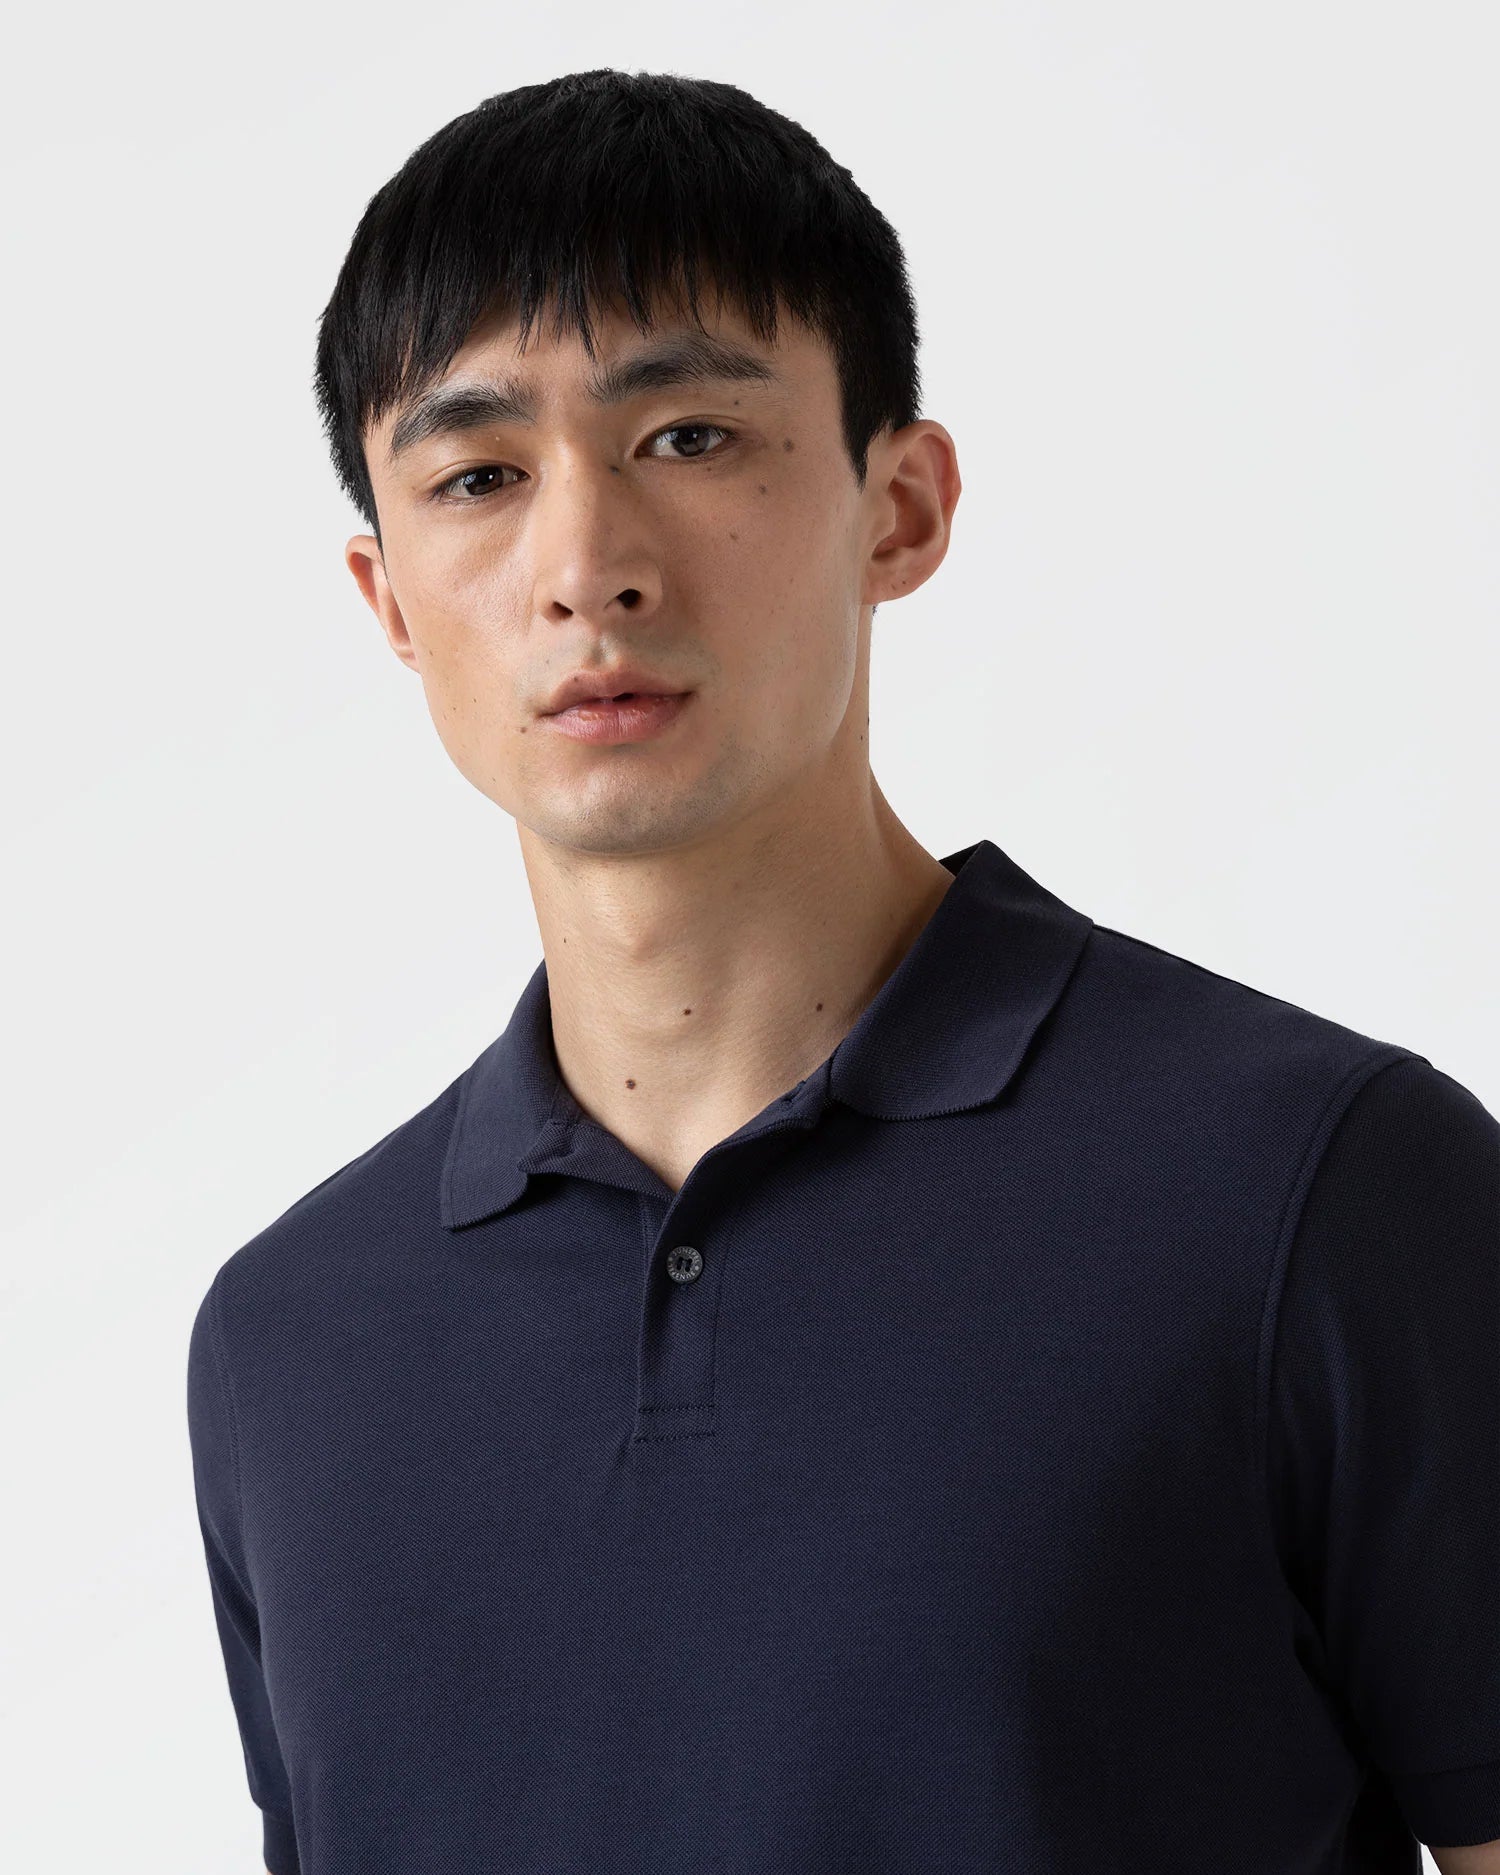 Piqué Polo Shirt - Navy